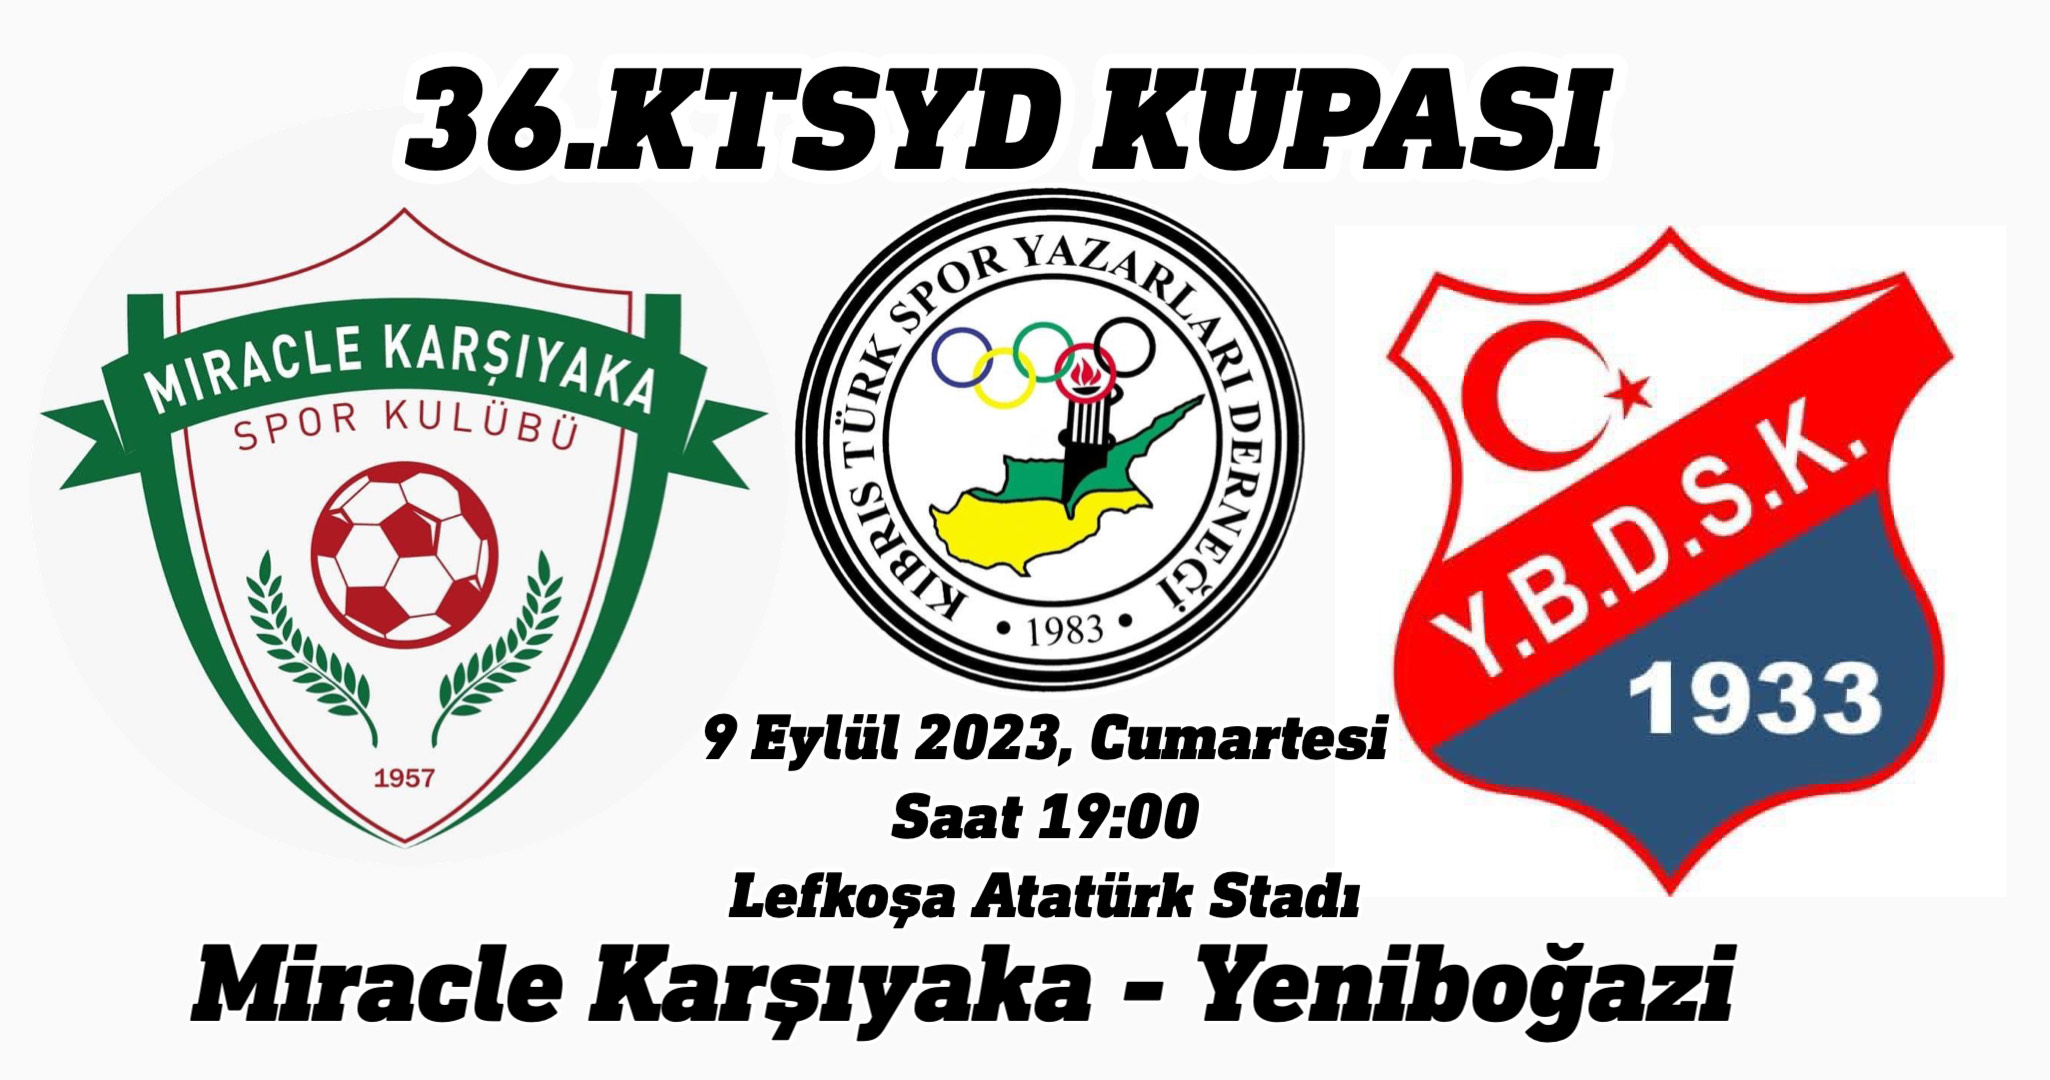 KTSYD Kupası için M. Karşıyaka ile Yeniboğaziçi karşı karşıya gelecek